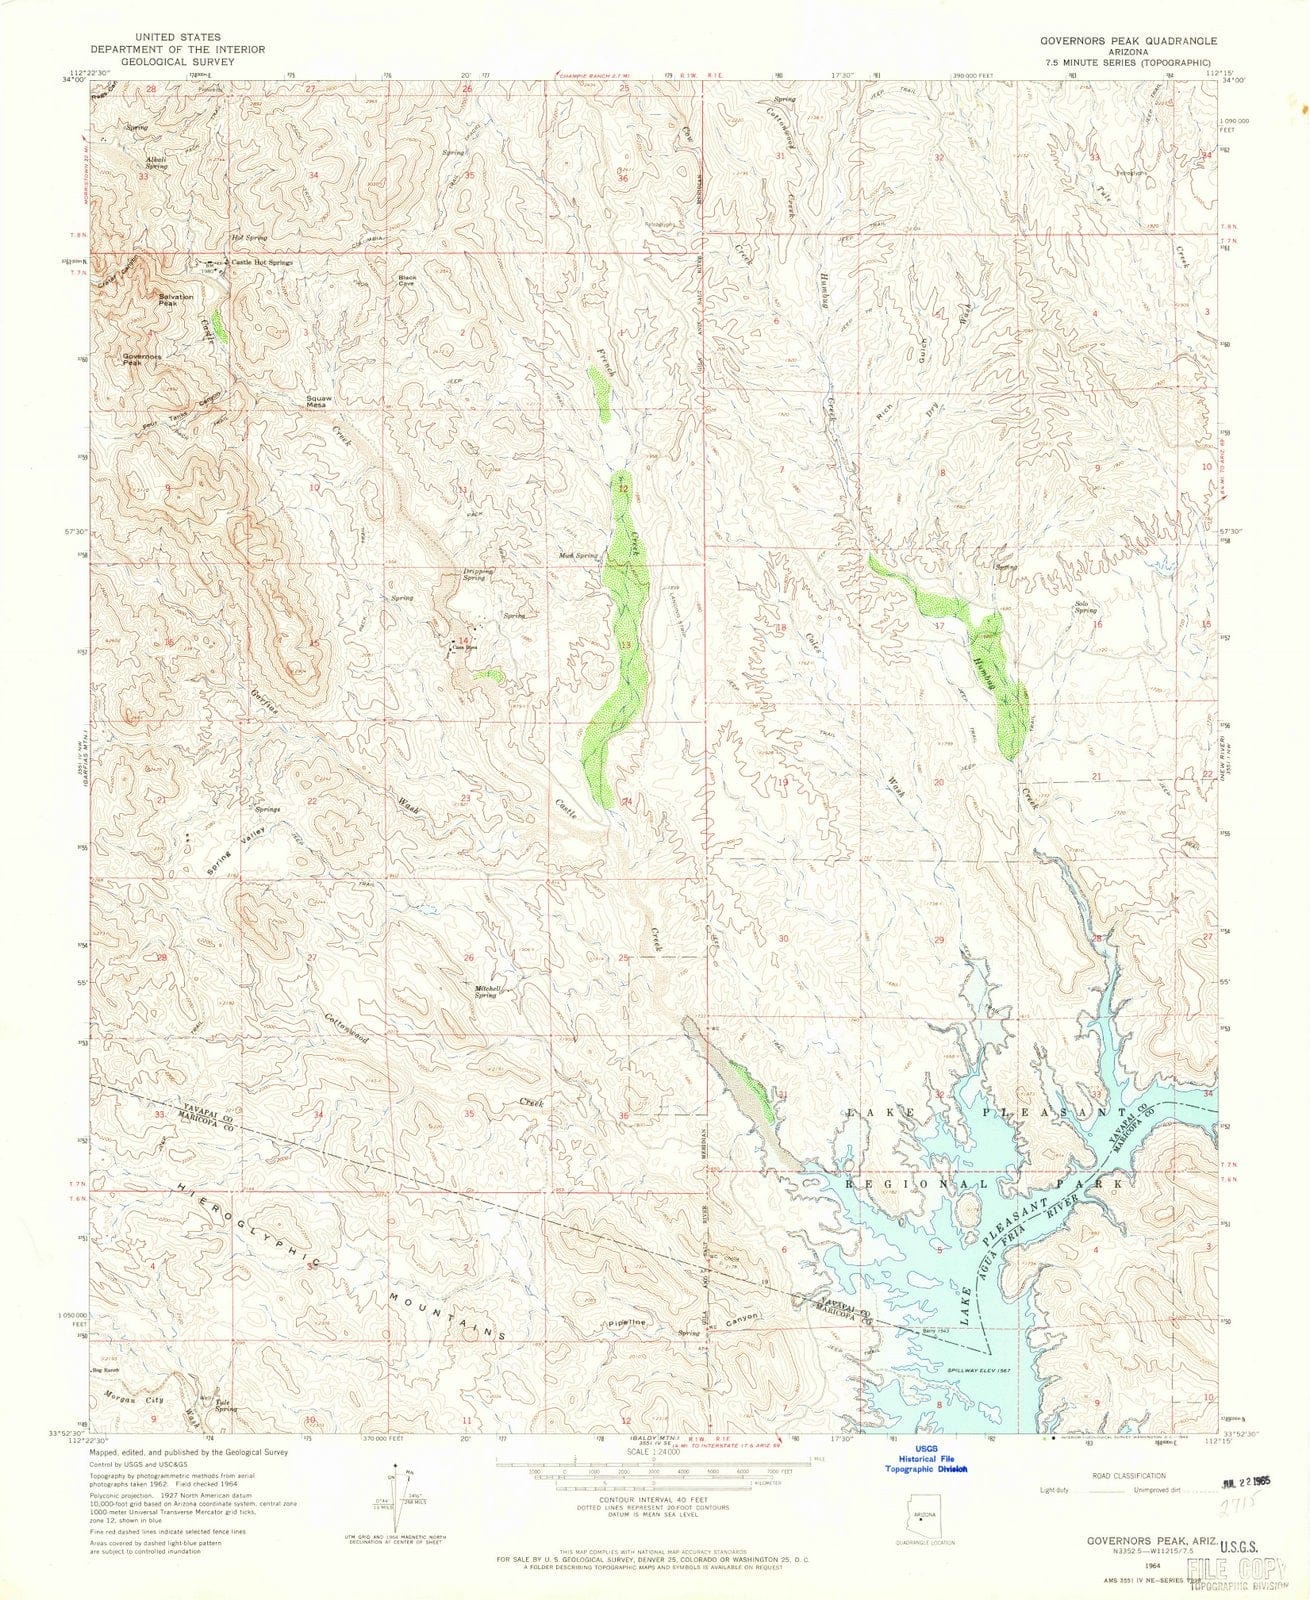 1964 Governors Peak, AZ - Arizona - USGS Topographic Map